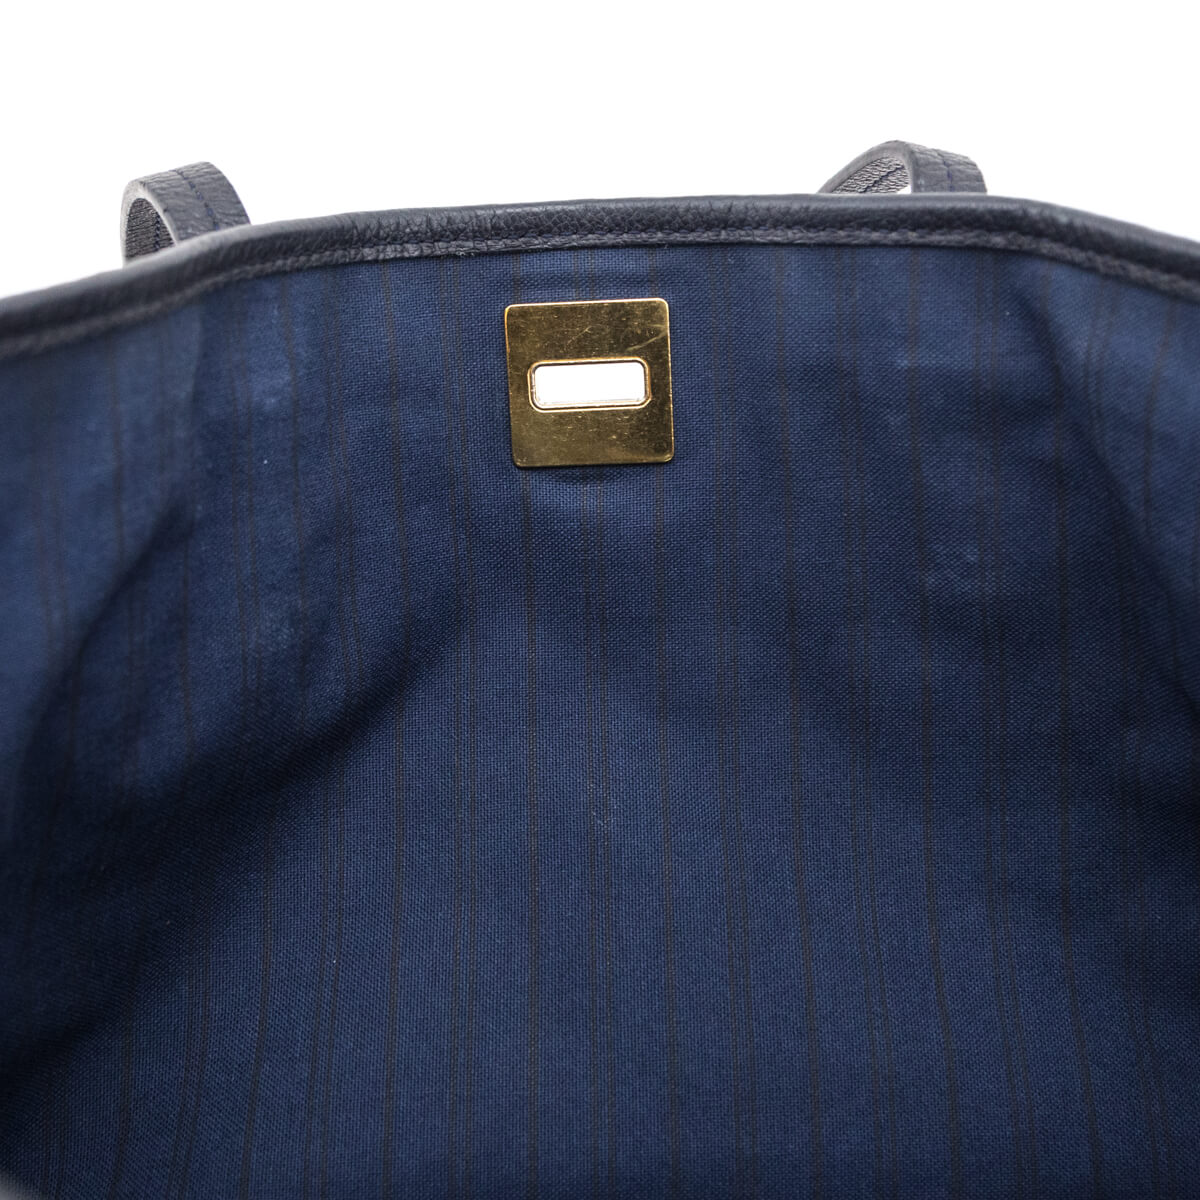 Louis Vuitton Monogram Empreinte Citadine PM w/ Pouch - Blue Totes